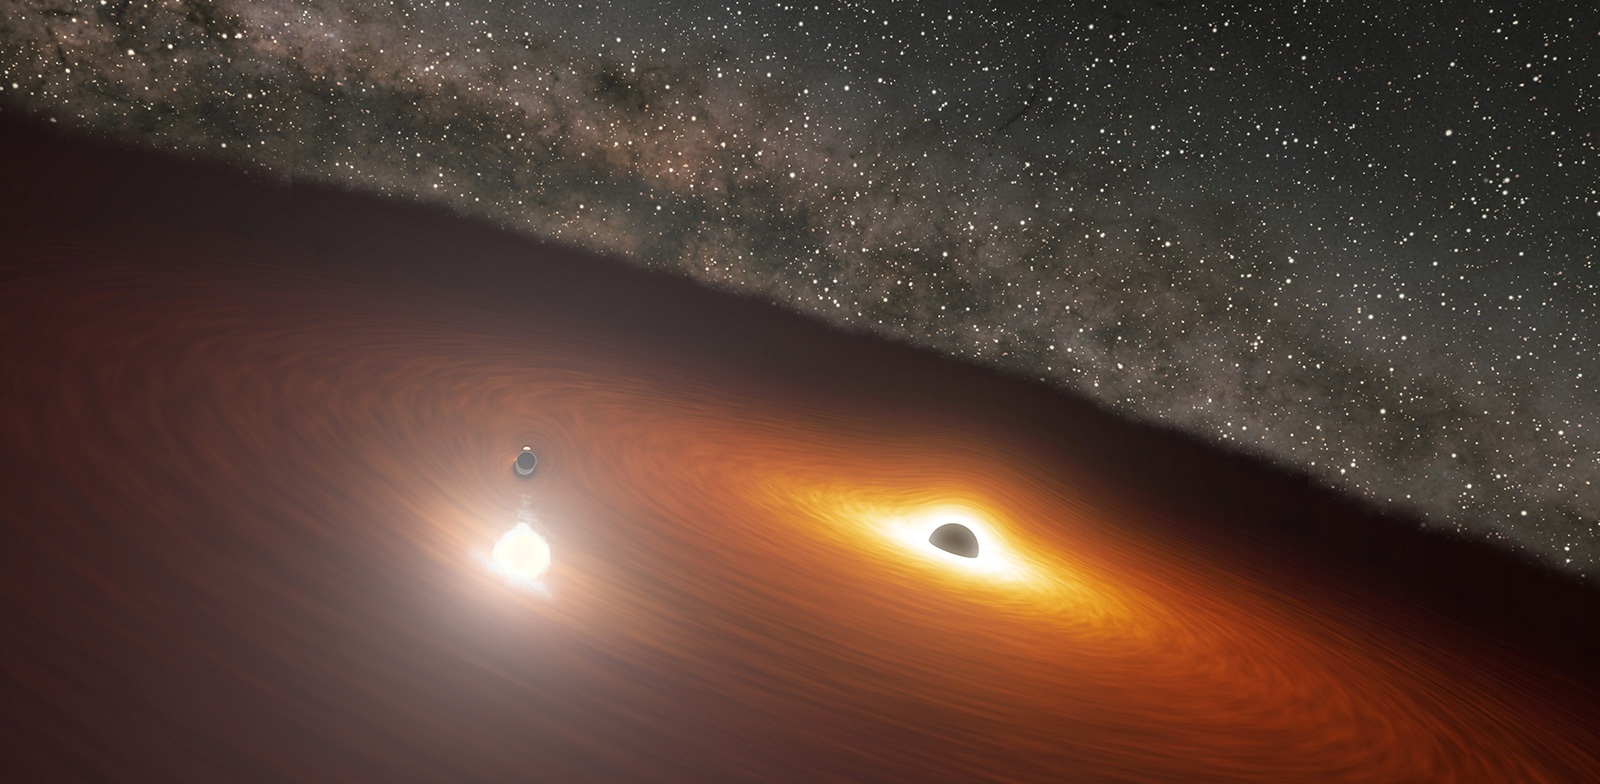 Cette image d'artiste montre deux trous noirs supermassifs dans la galaxie possédant le quasar nommé OJ 287. Le plus petit trou noir tourne autour du plus grand, qui est également entouré d'un disque de gaz. Lorsque le plus petit trou noir traverse le disque, il produit un flash de lumière dont la luminosité est  supérieure à 1 milliard d'étoiles. © Nasa/JPL-Caltech